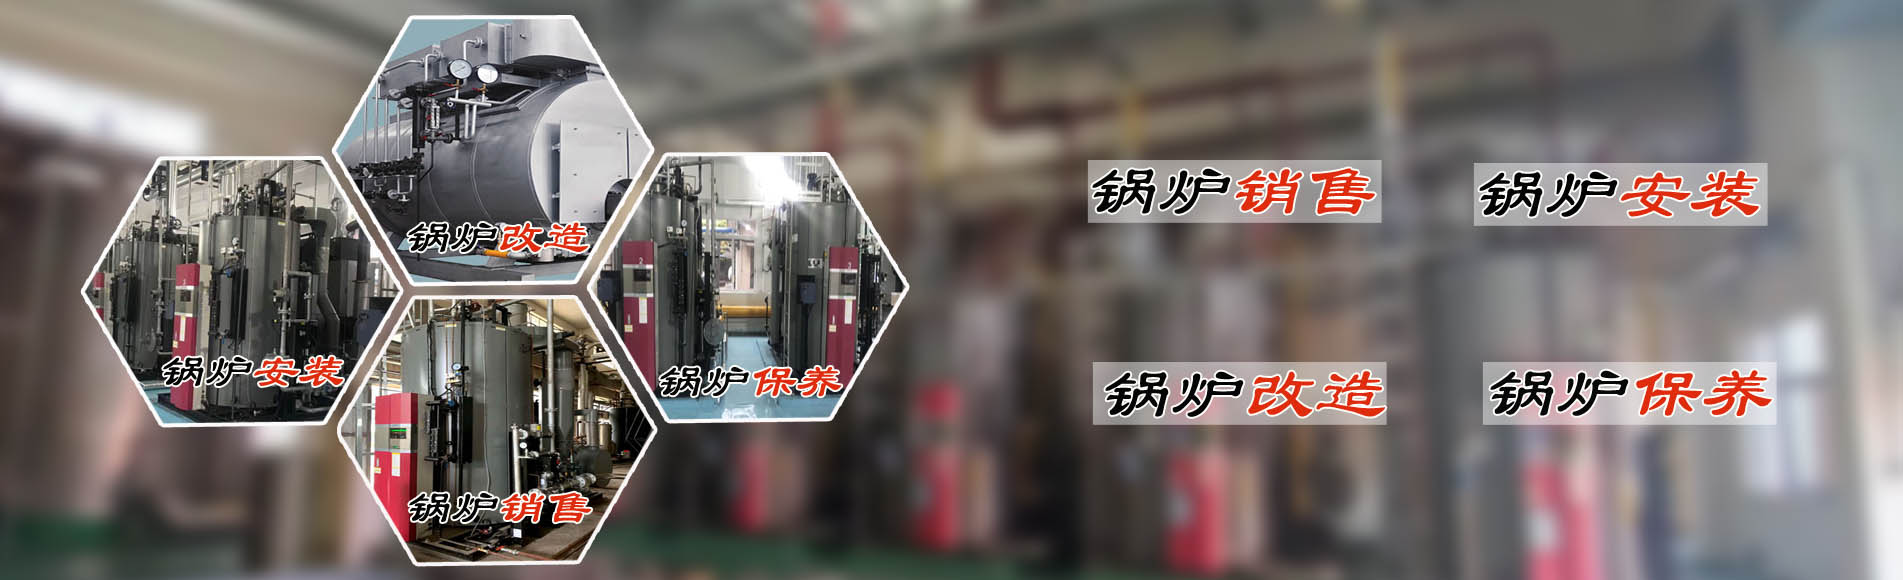 廣州希諾機電提供蒸汽節能鍋爐、熱水鍋爐安裝銷售、鍋爐改造、鍋爐維護保養服務。